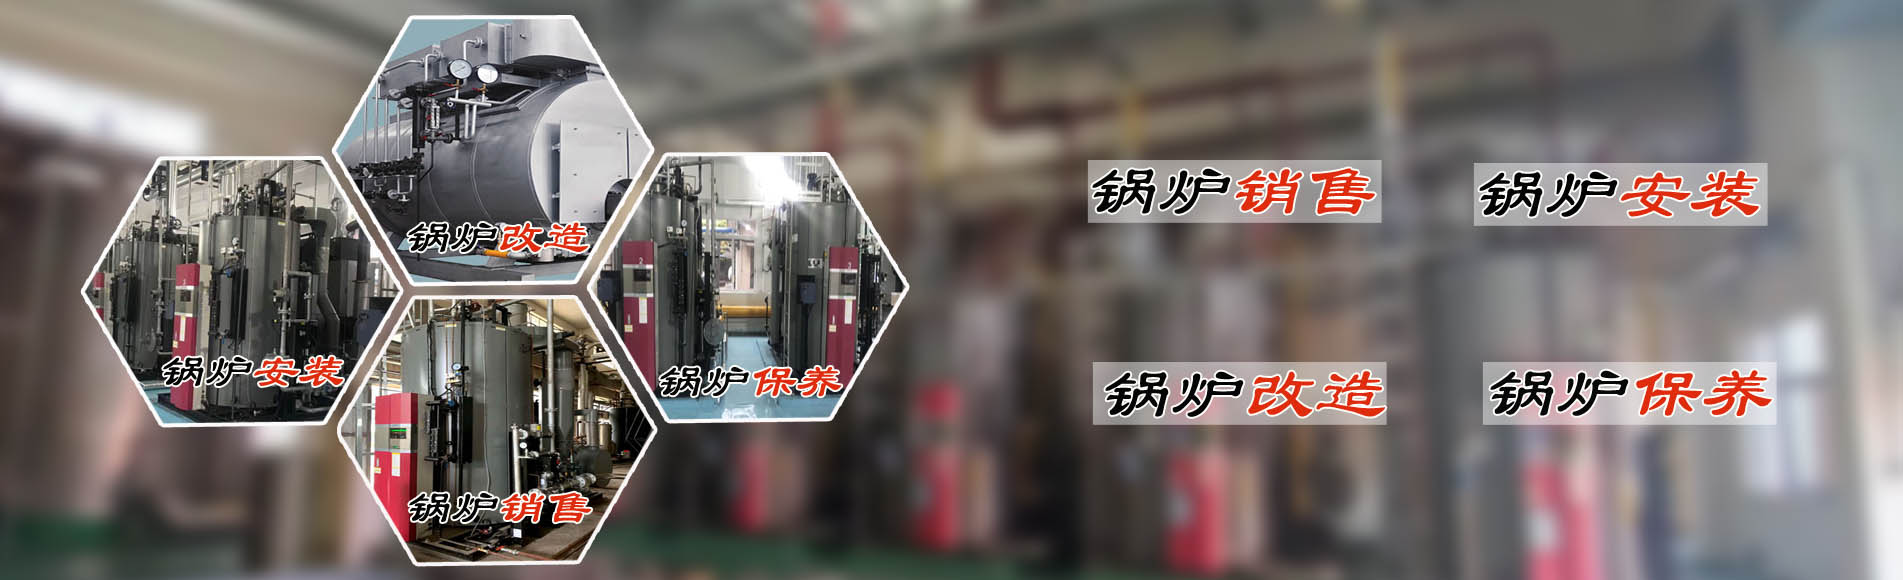 廣州希諾機電提供蒸汽節能鍋爐、熱水鍋爐安裝銷售、鍋爐改造、鍋爐維護保養服務。